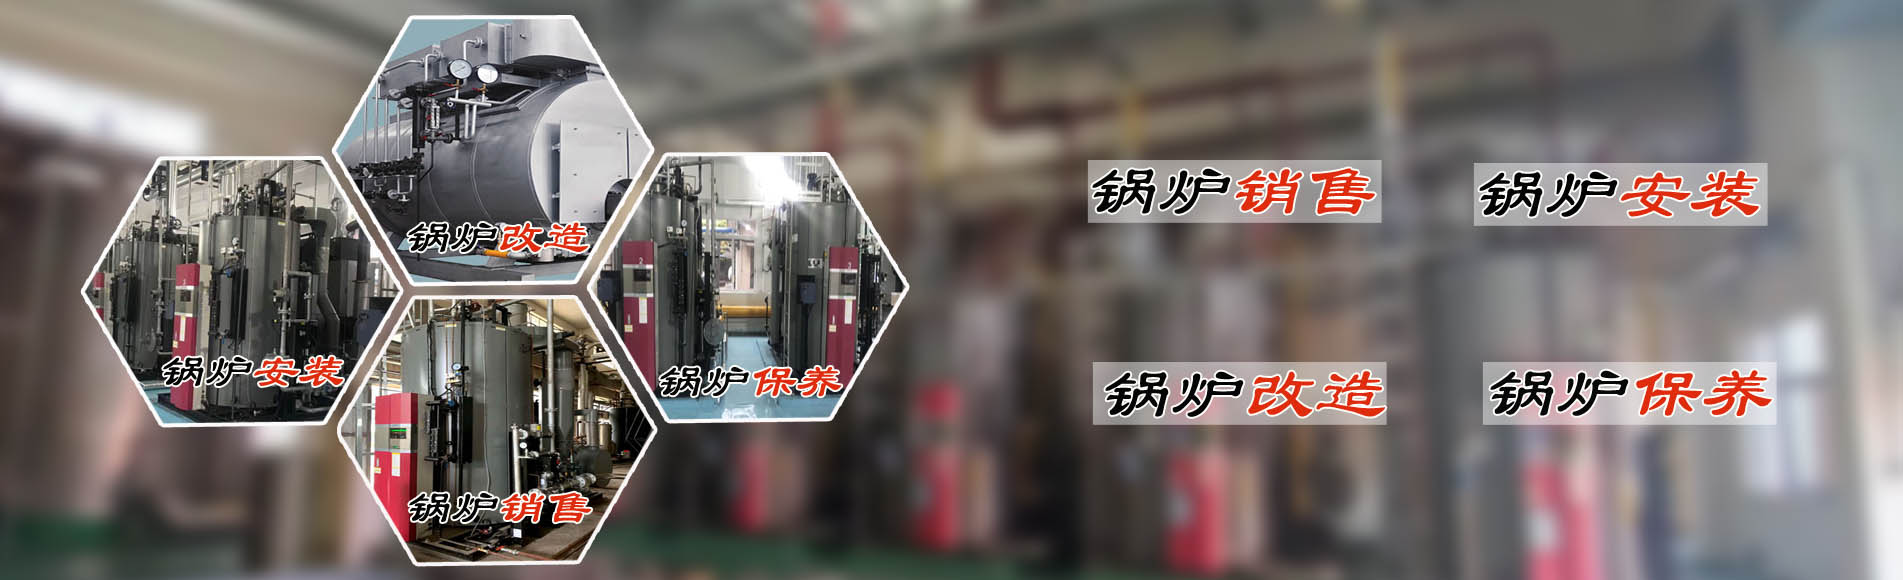 廣州希諾機電提供蒸汽節能鍋爐、熱水鍋爐安裝銷售、鍋爐改造、鍋爐維護保養服務。